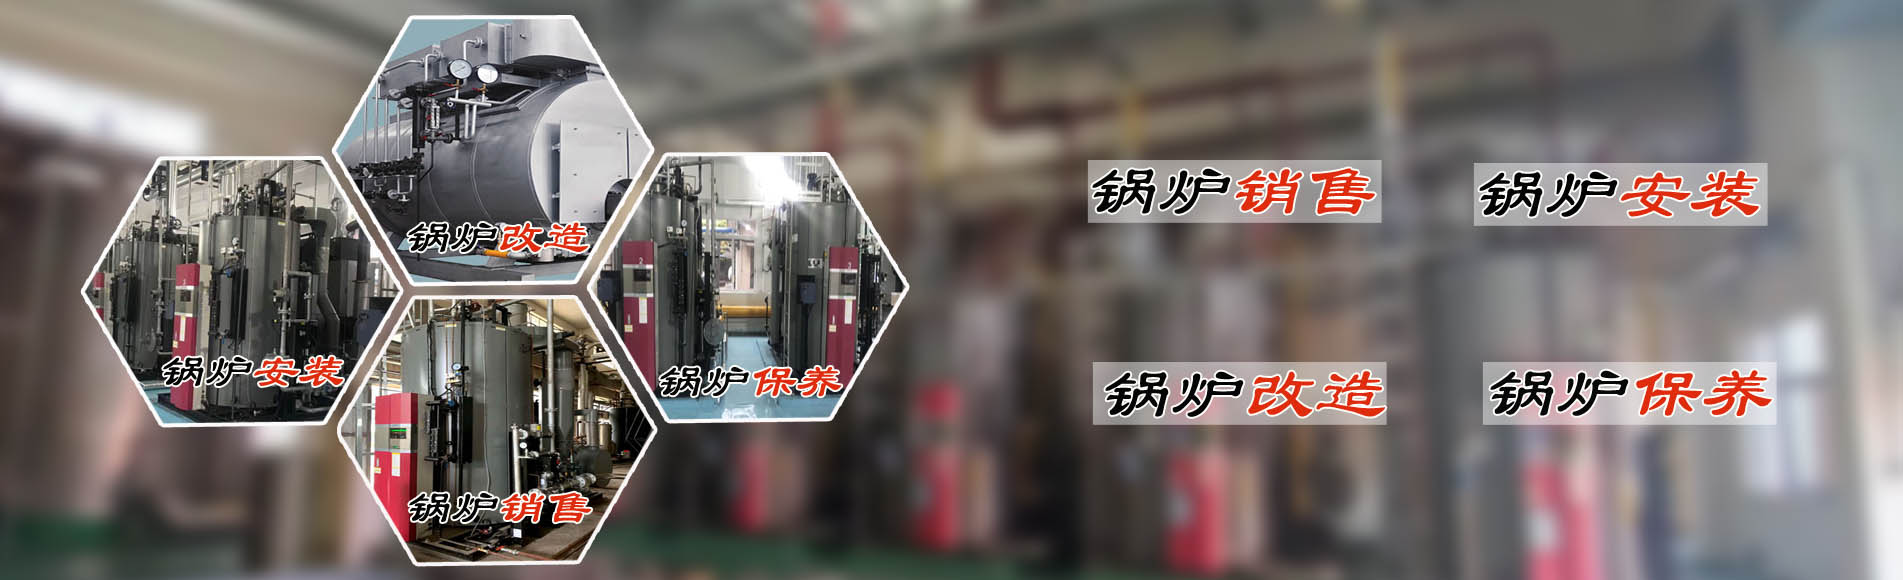 廣州希諾機電提供蒸汽節能鍋爐、熱水鍋爐安裝銷售、鍋爐改造、鍋爐維護保養服務。